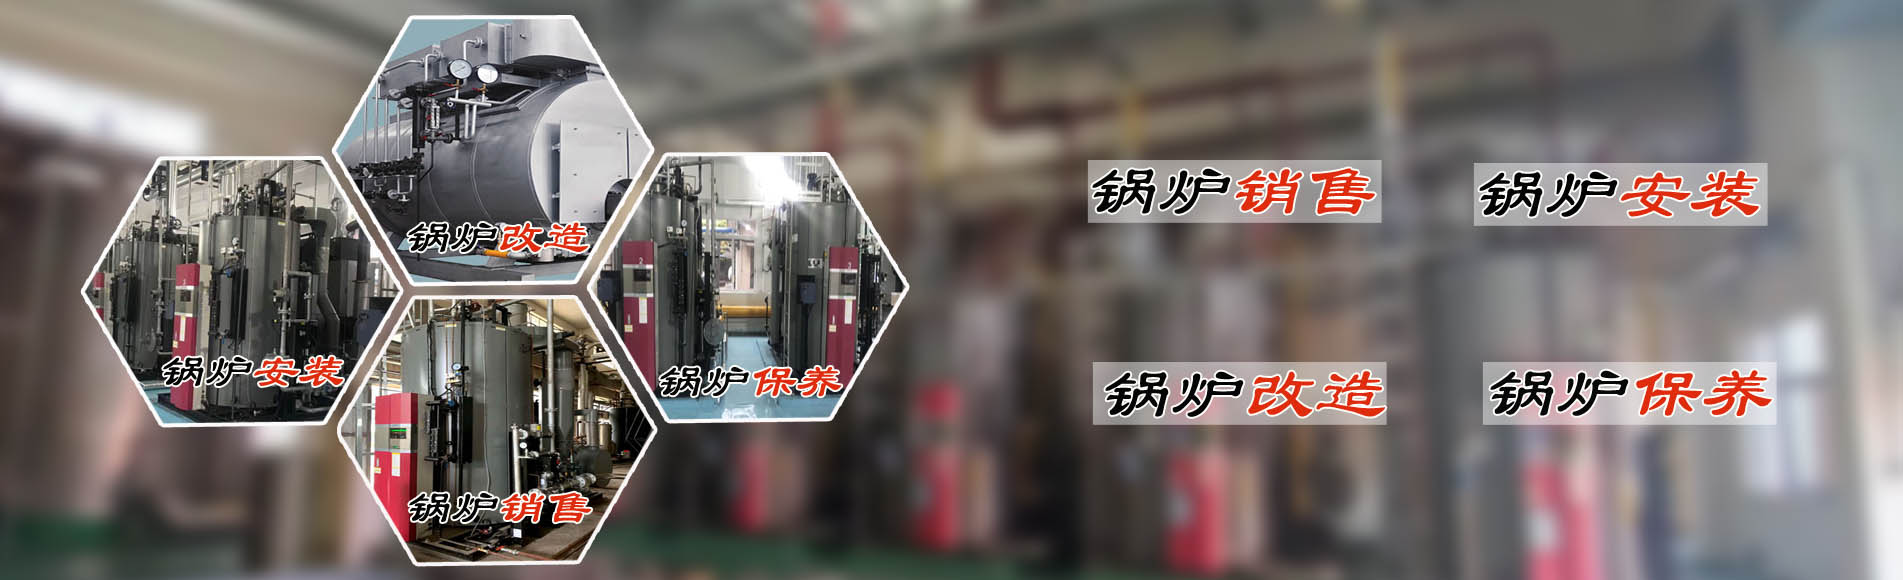 廣州希諾機電提供蒸汽節能鍋爐、熱水鍋爐安裝銷售、鍋爐改造、鍋爐維護保養服務。